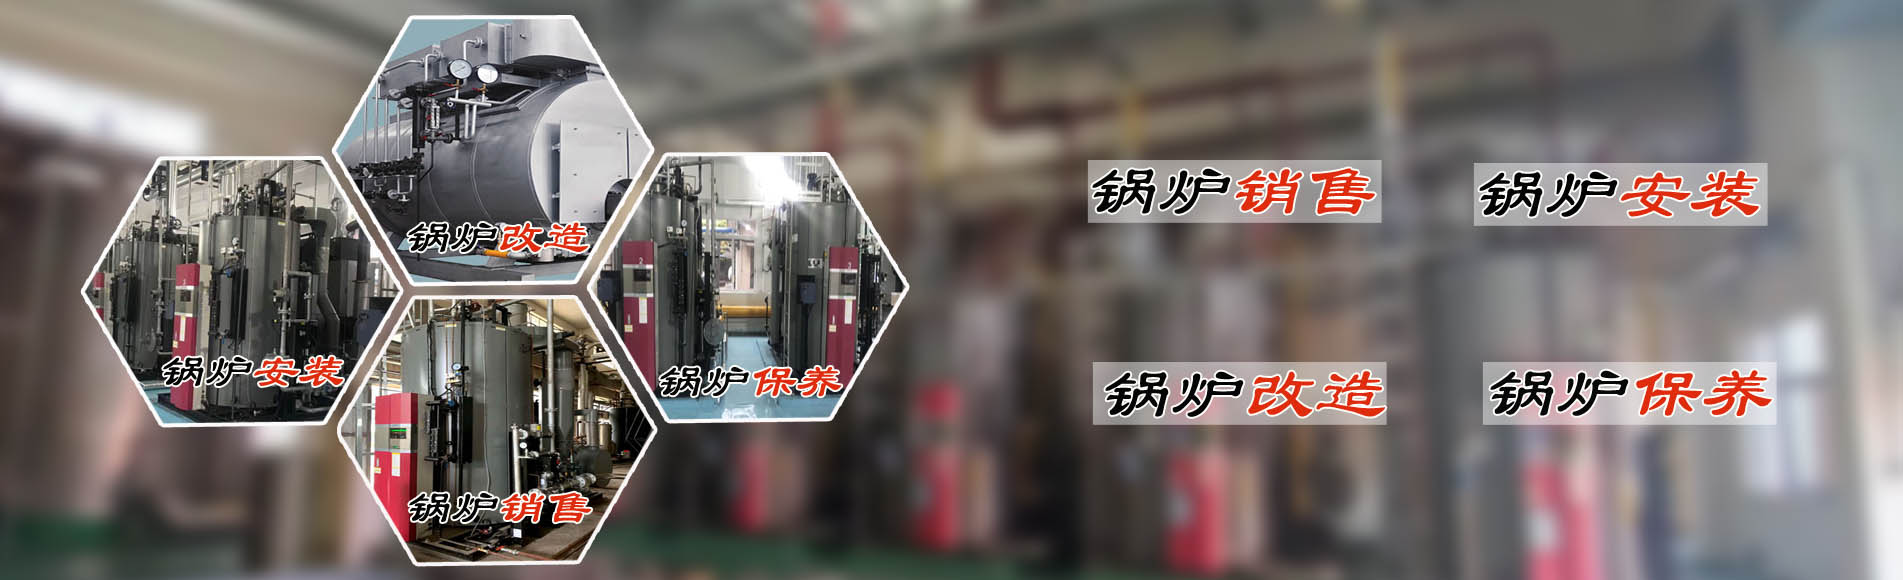 廣州希諾機電提供蒸汽節能鍋爐、熱水鍋爐安裝銷售、鍋爐改造、鍋爐維護保養服務。